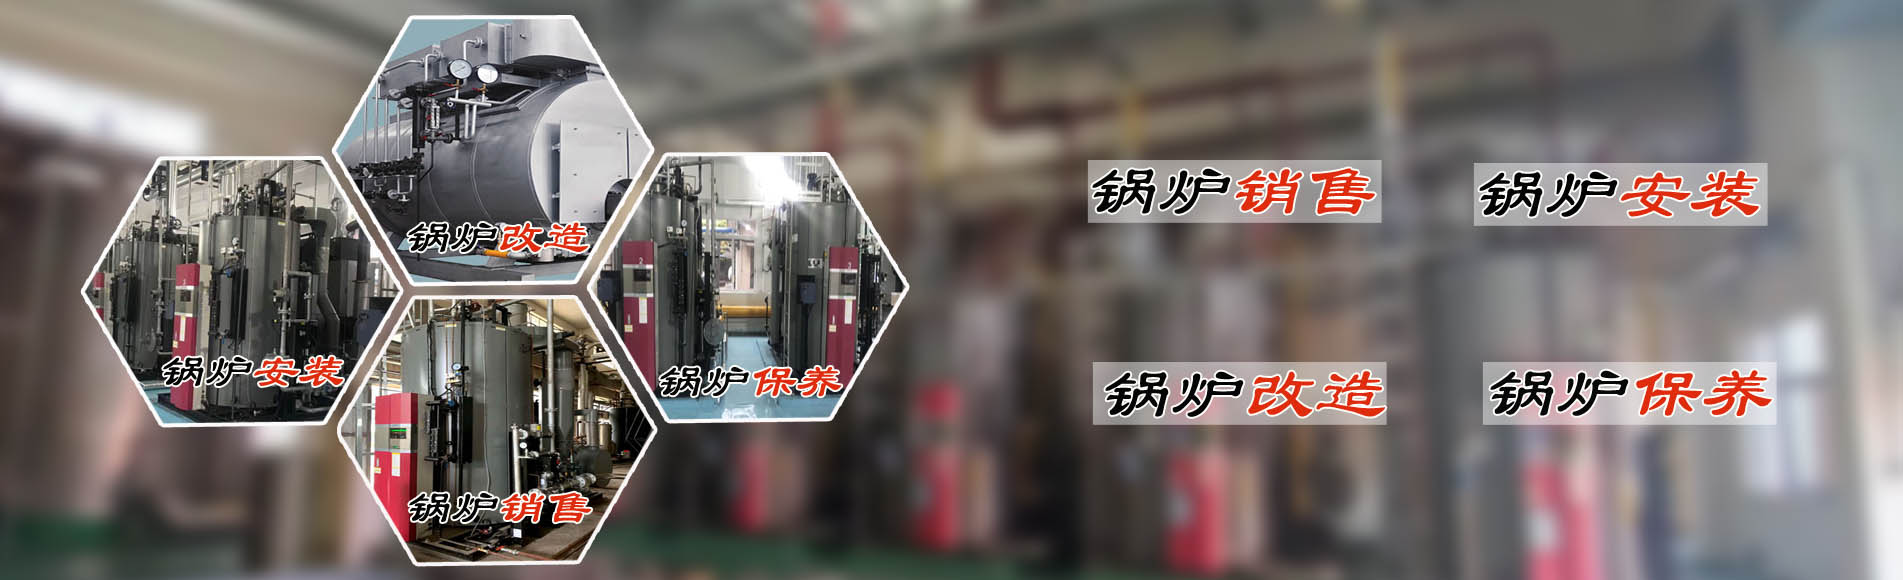 廣州希諾機電提供蒸汽節能鍋爐、熱水鍋爐安裝銷售、鍋爐改造、鍋爐維護保養服務。